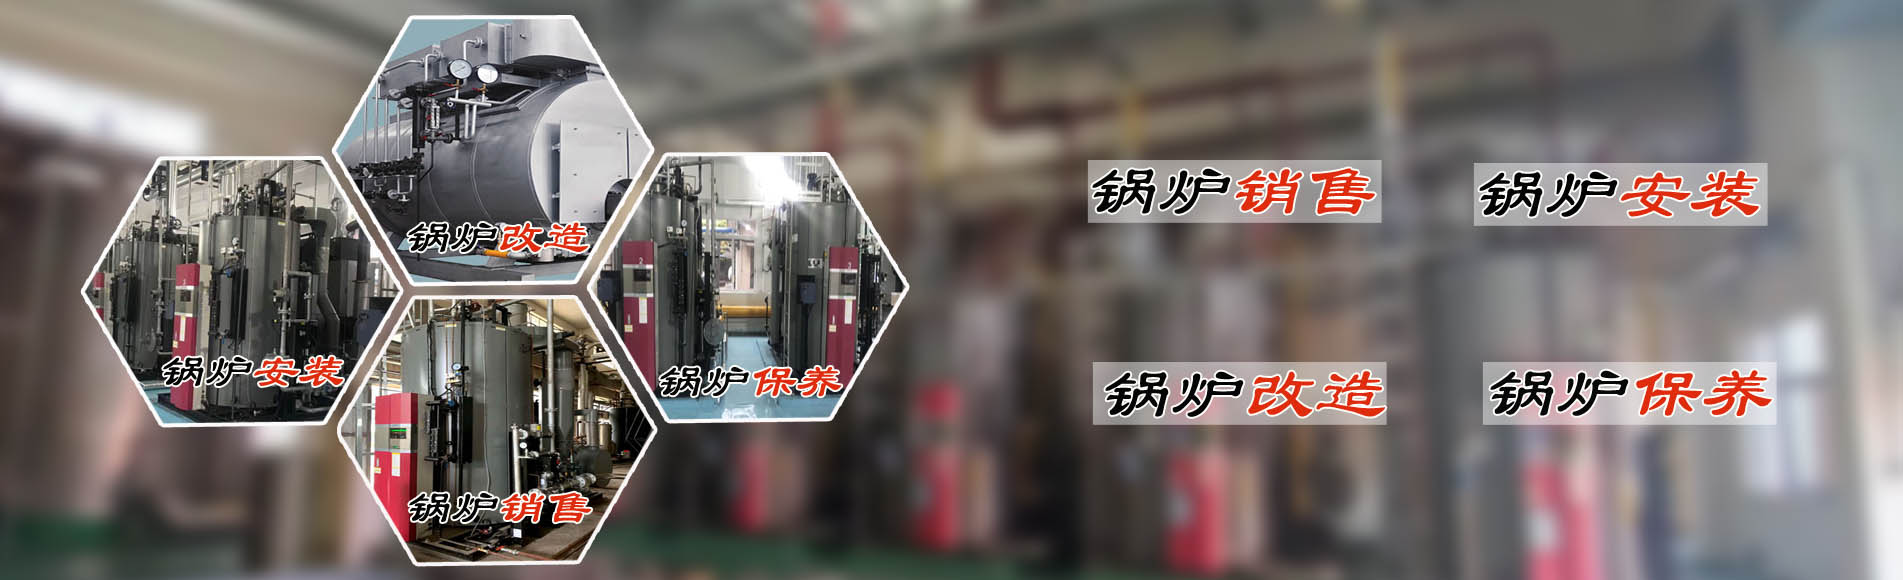 廣州希諾機電提供蒸汽節能鍋爐、熱水鍋爐安裝銷售、鍋爐改造、鍋爐維護保養服務。